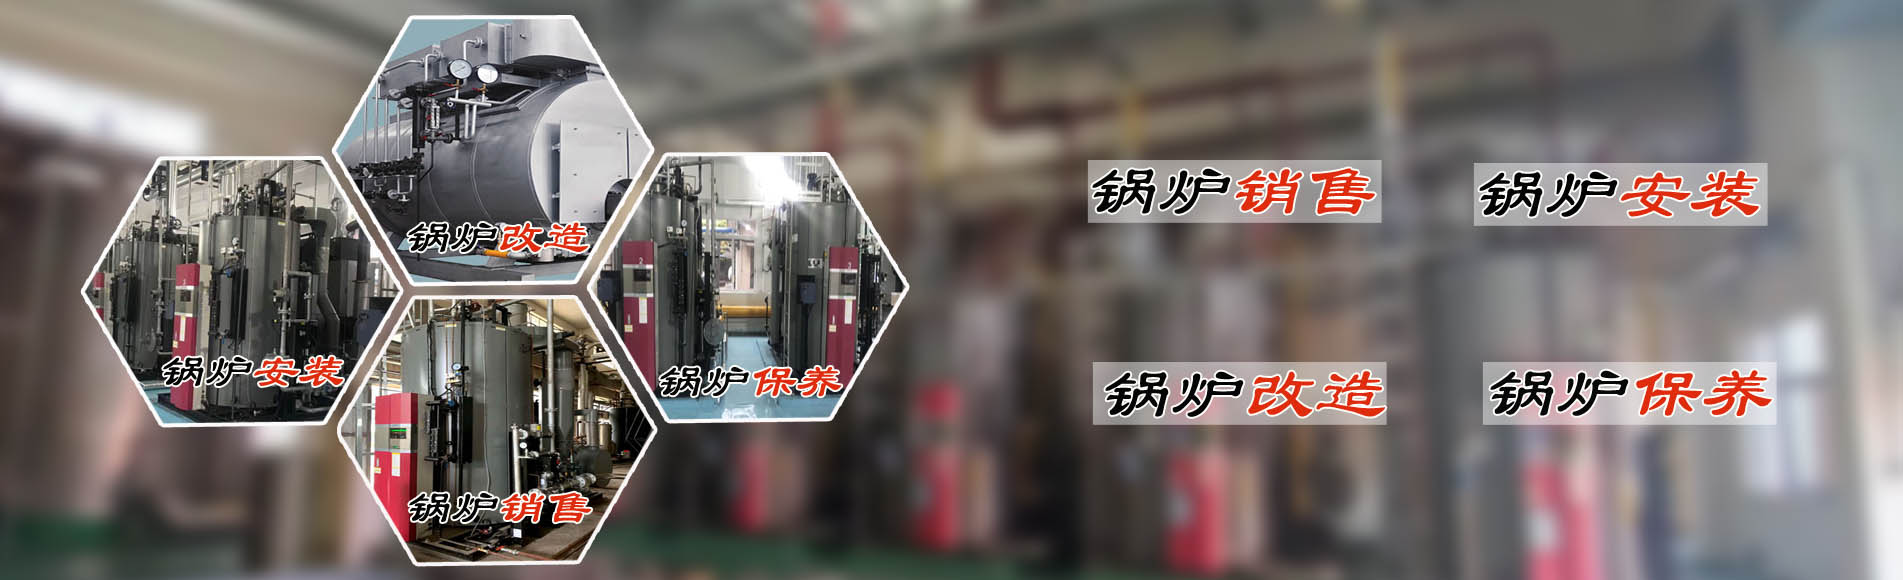 廣州希諾機電提供蒸汽節能鍋爐、熱水鍋爐安裝銷售、鍋爐改造、鍋爐維護保養服務。